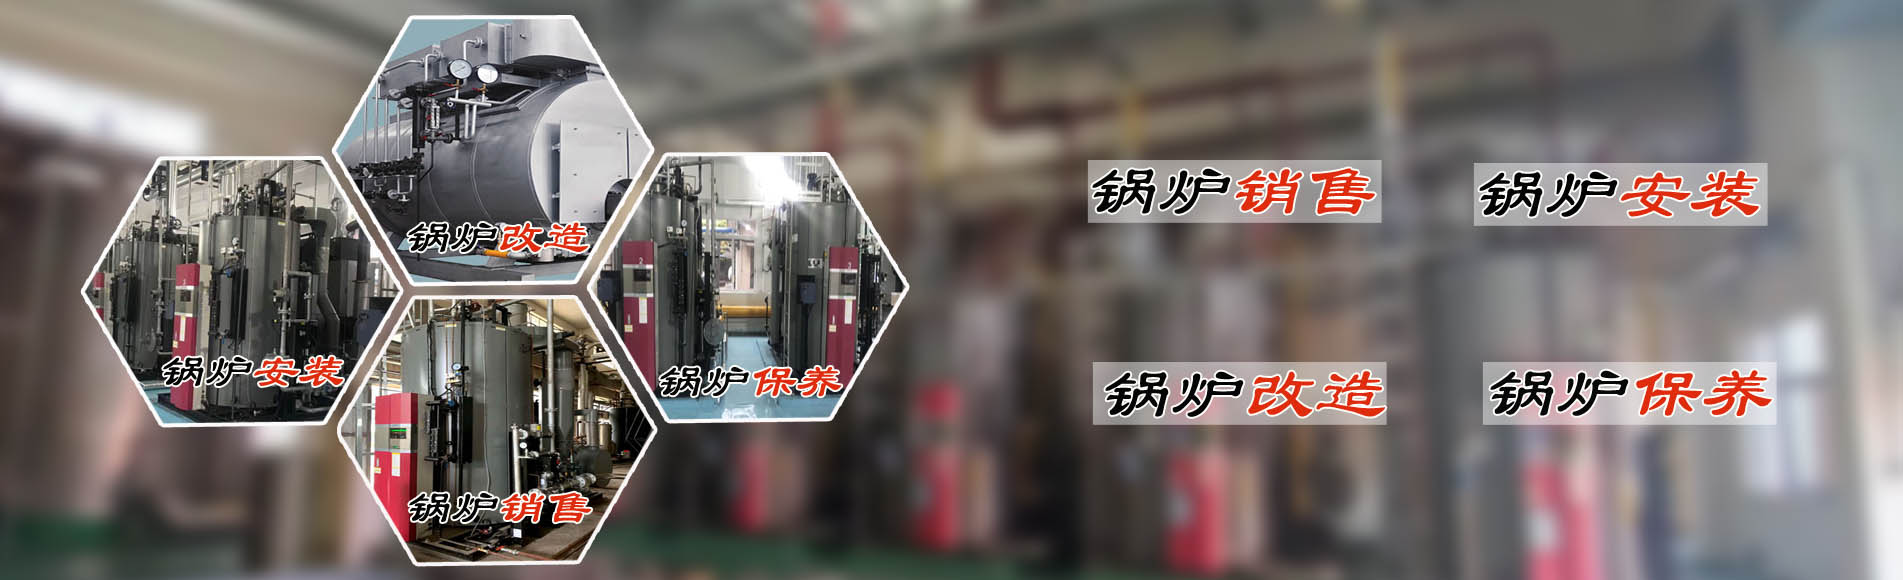 廣州希諾機電提供蒸汽節能鍋爐、熱水鍋爐安裝銷售、鍋爐改造、鍋爐維護保養服務。